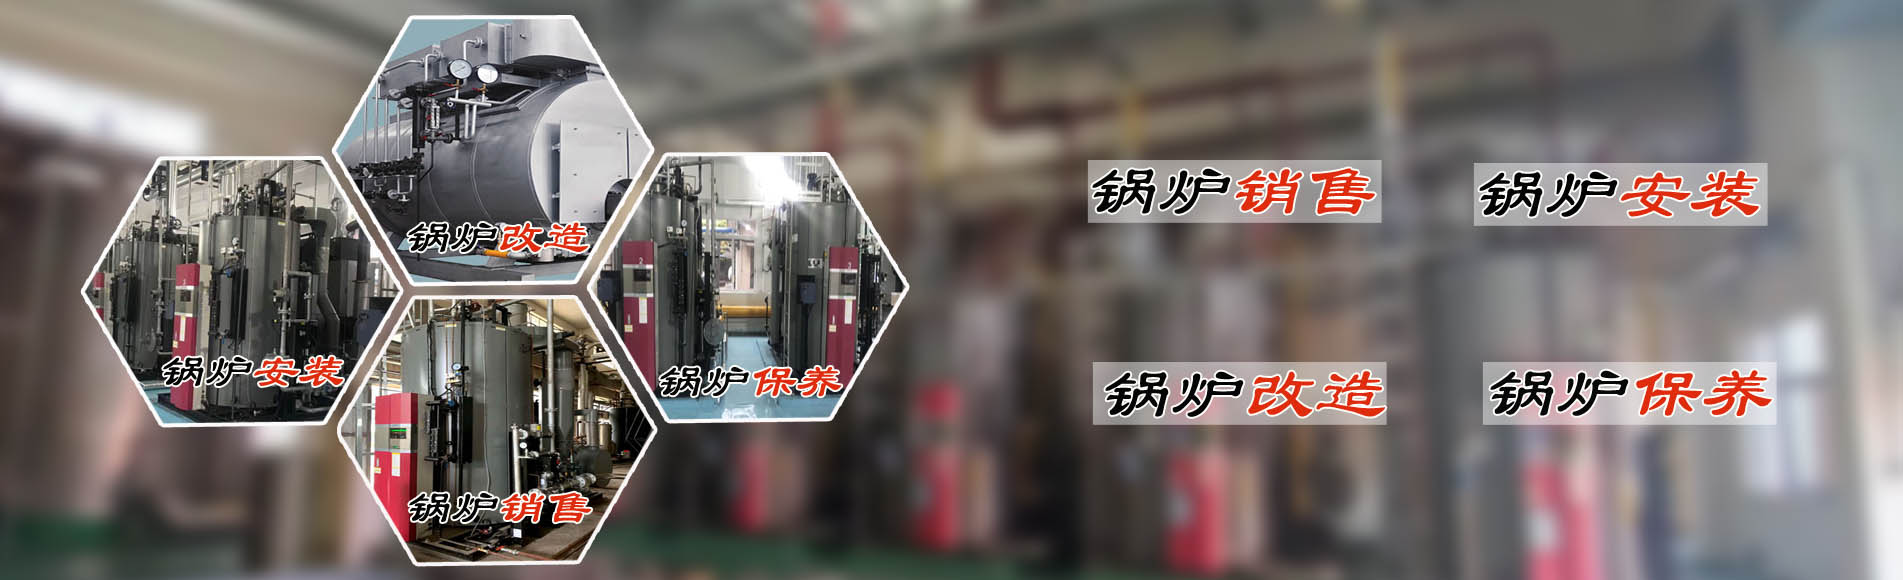 廣州希諾機電提供蒸汽節能鍋爐、熱水鍋爐安裝銷售、鍋爐改造、鍋爐維護保養服務。